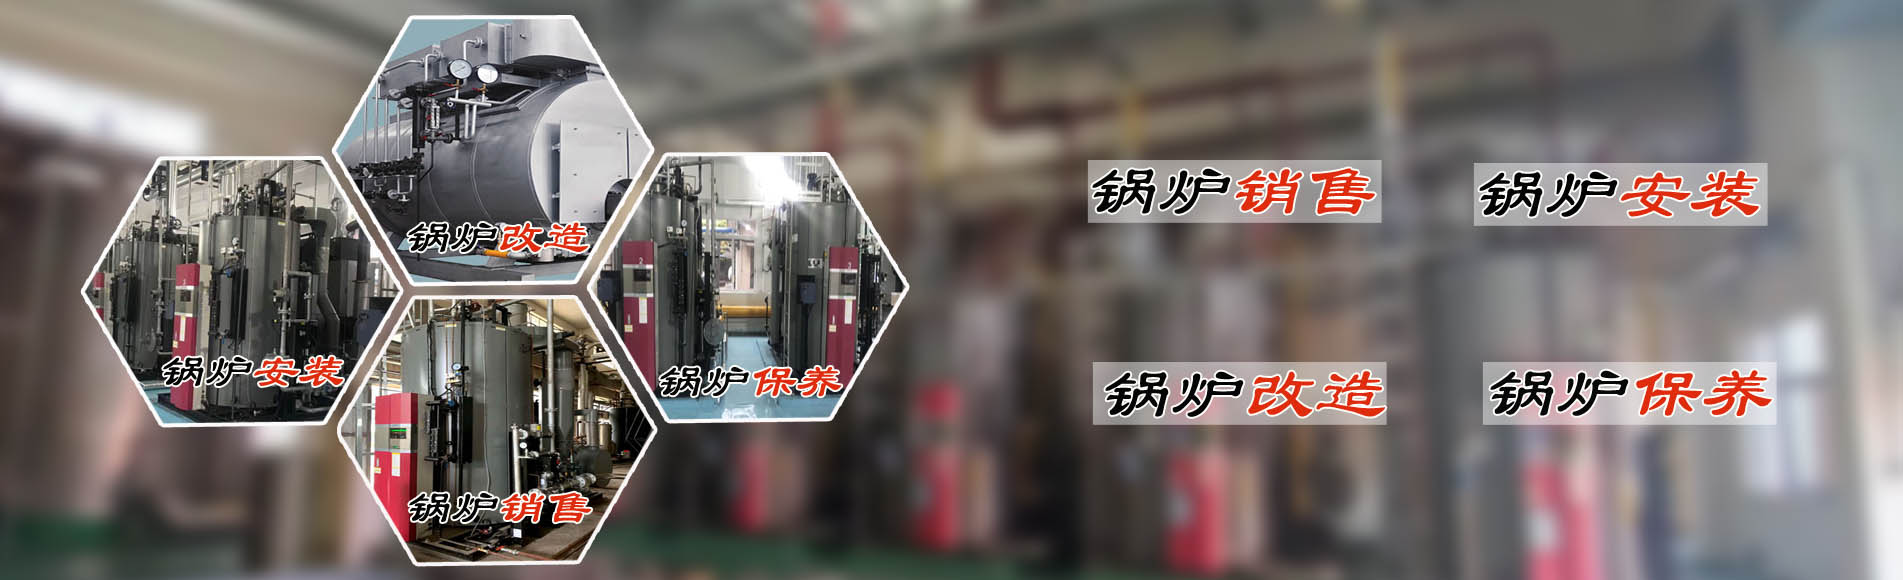 廣州希諾機電提供蒸汽節能鍋爐、熱水鍋爐安裝銷售、鍋爐改造、鍋爐維護保養服務。